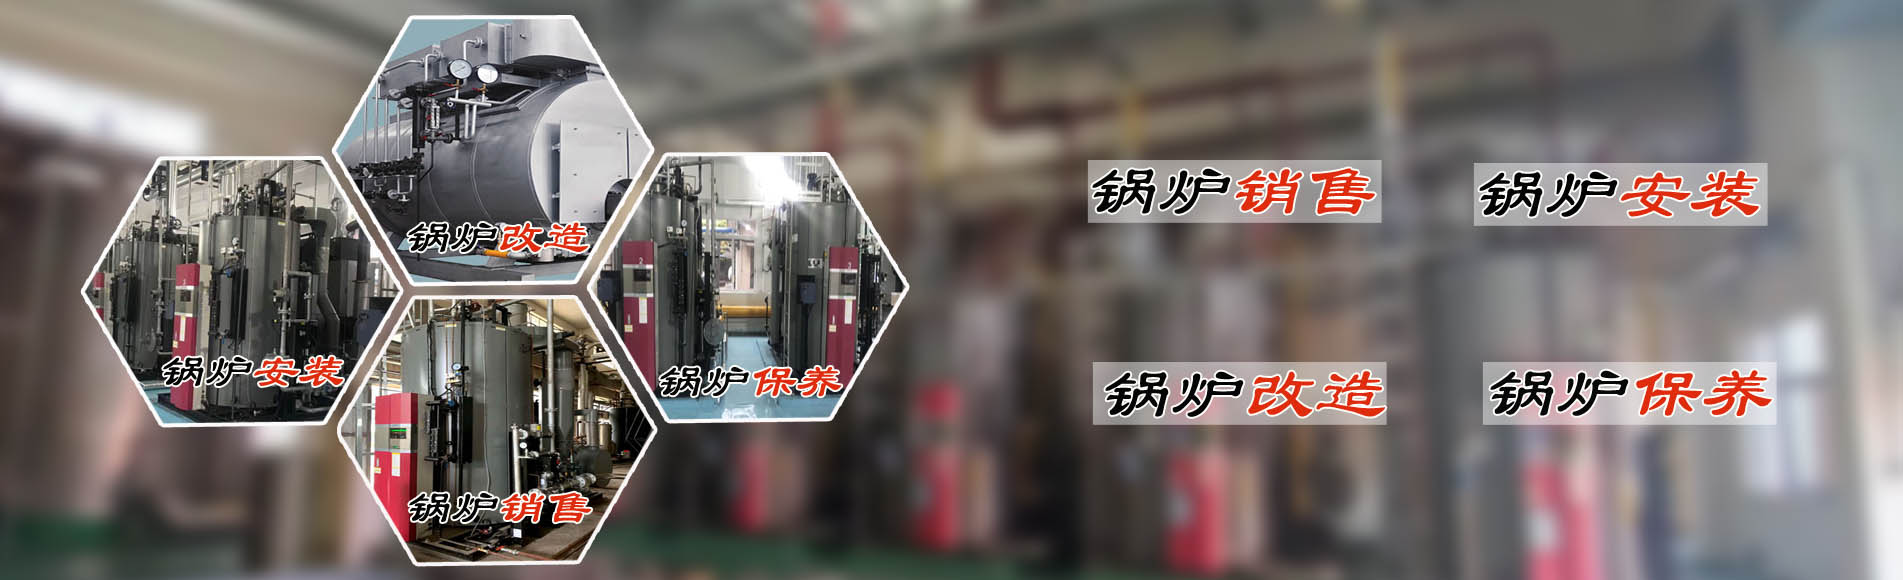 廣州希諾機電提供蒸汽節能鍋爐、熱水鍋爐安裝銷售、鍋爐改造、鍋爐維護保養服務。